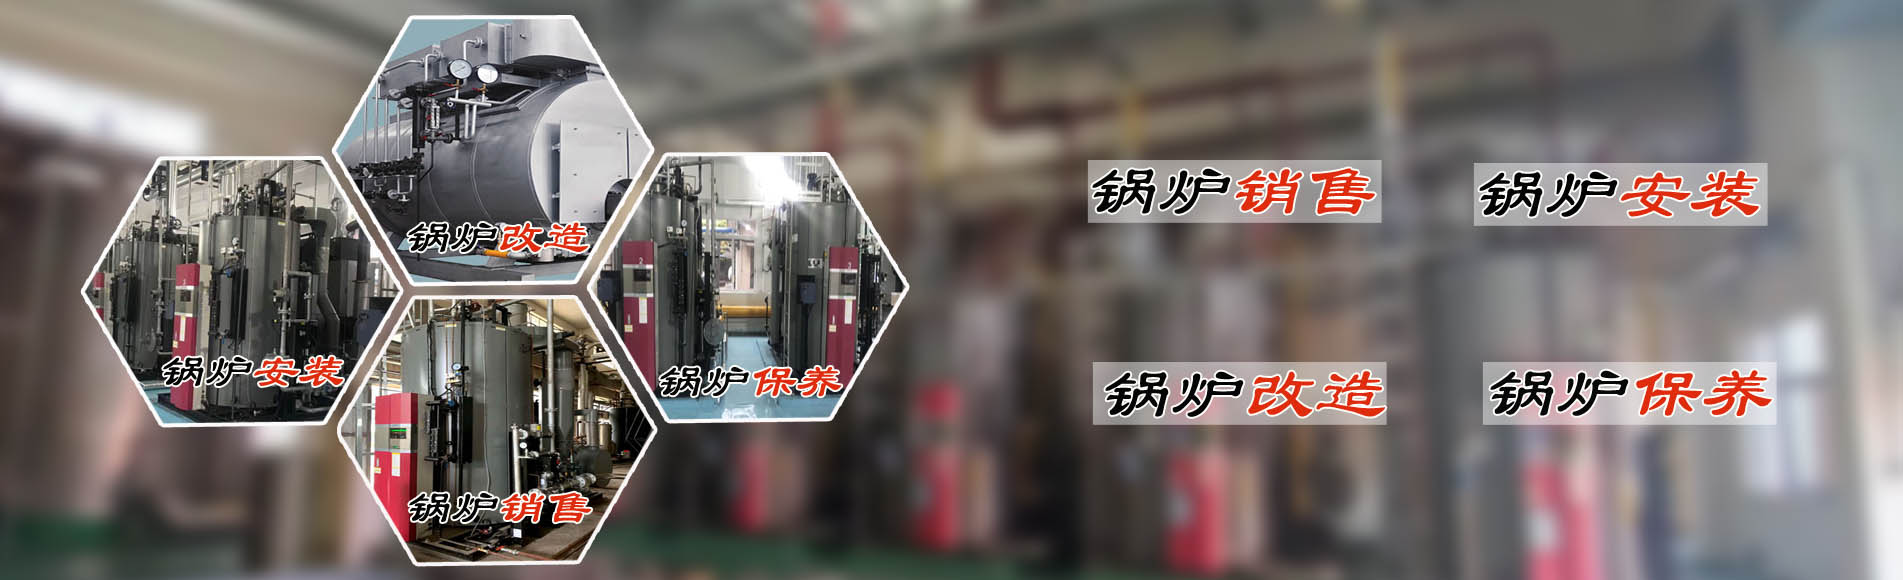 廣州希諾機電提供蒸汽節能鍋爐、熱水鍋爐安裝銷售、鍋爐改造、鍋爐維護保養服務。